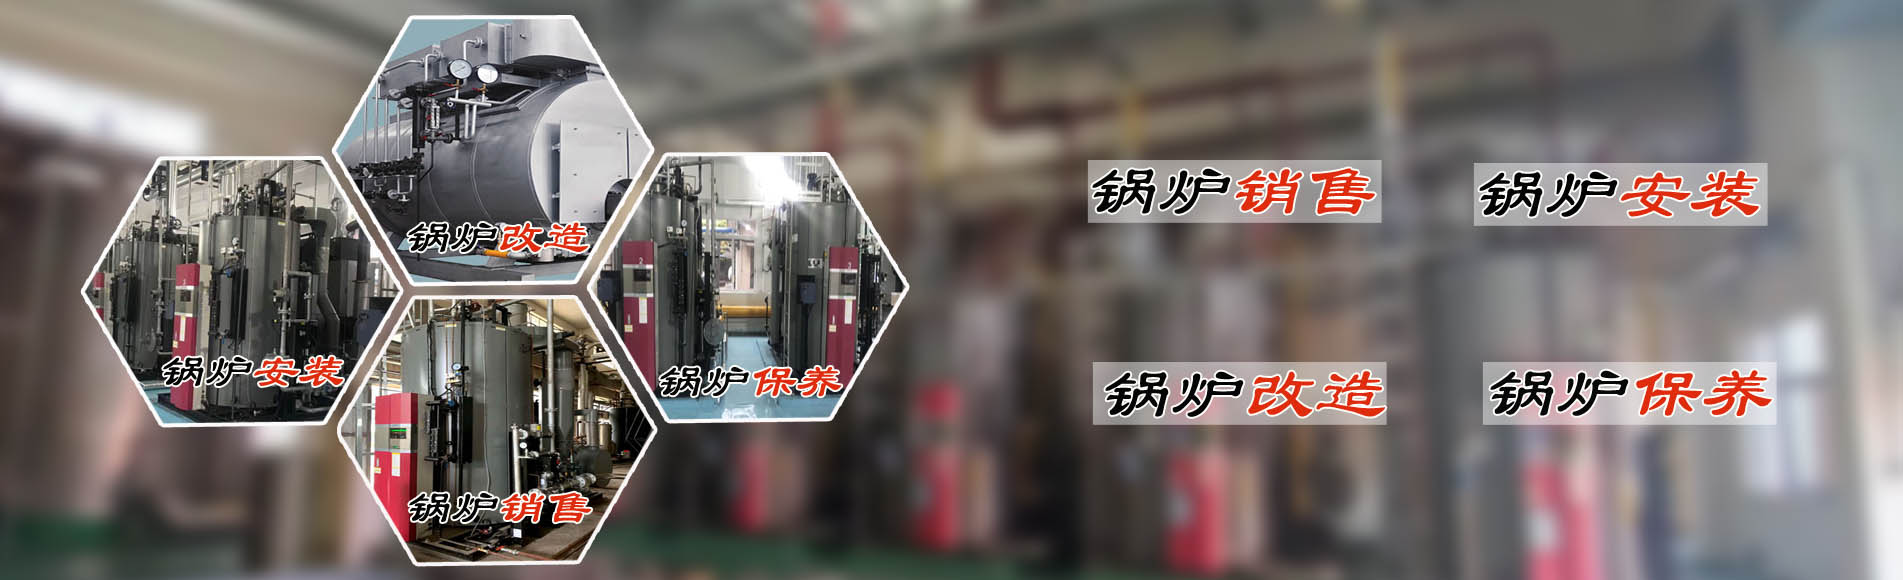 廣州希諾機電提供蒸汽節能鍋爐、熱水鍋爐安裝銷售、鍋爐改造、鍋爐維護保養服務。